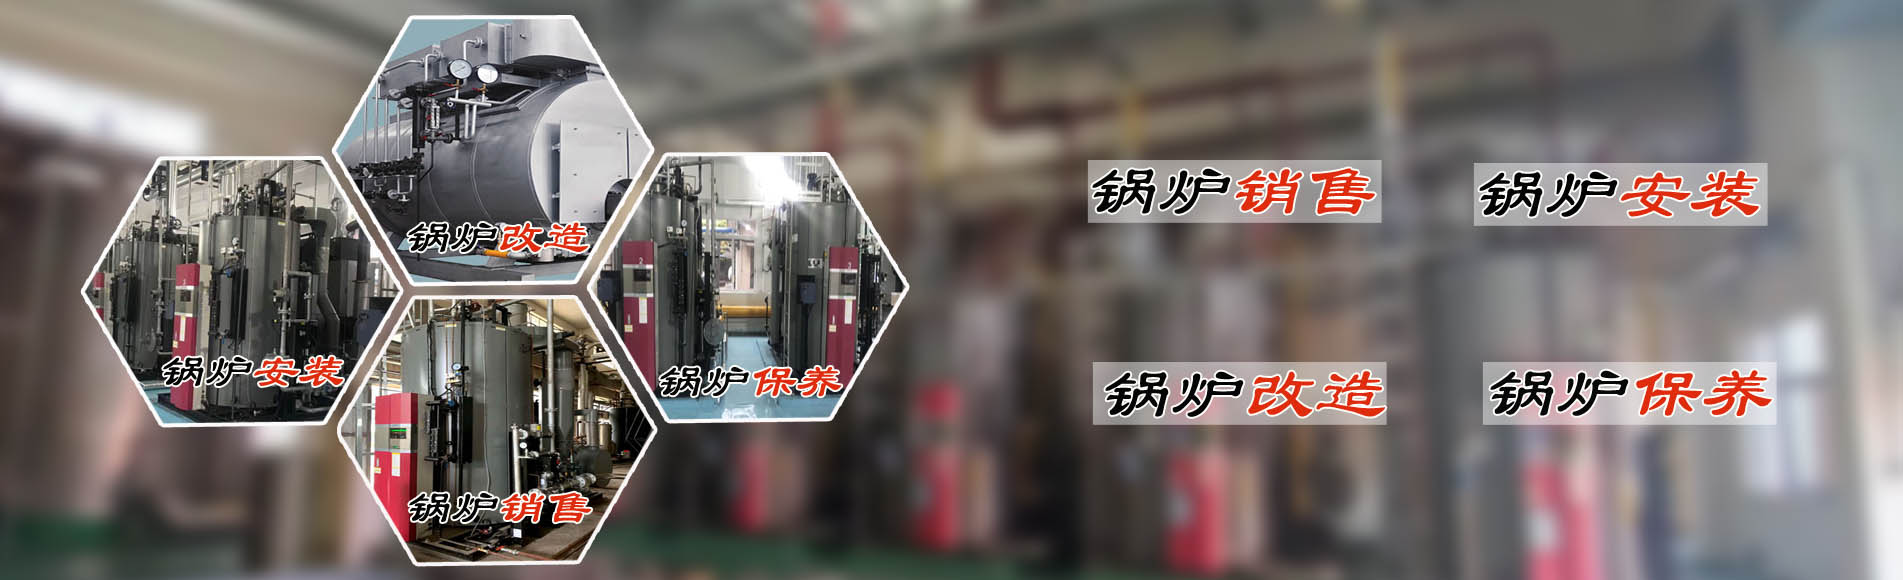 廣州希諾機電提供蒸汽節能鍋爐、熱水鍋爐安裝銷售、鍋爐改造、鍋爐維護保養服務。